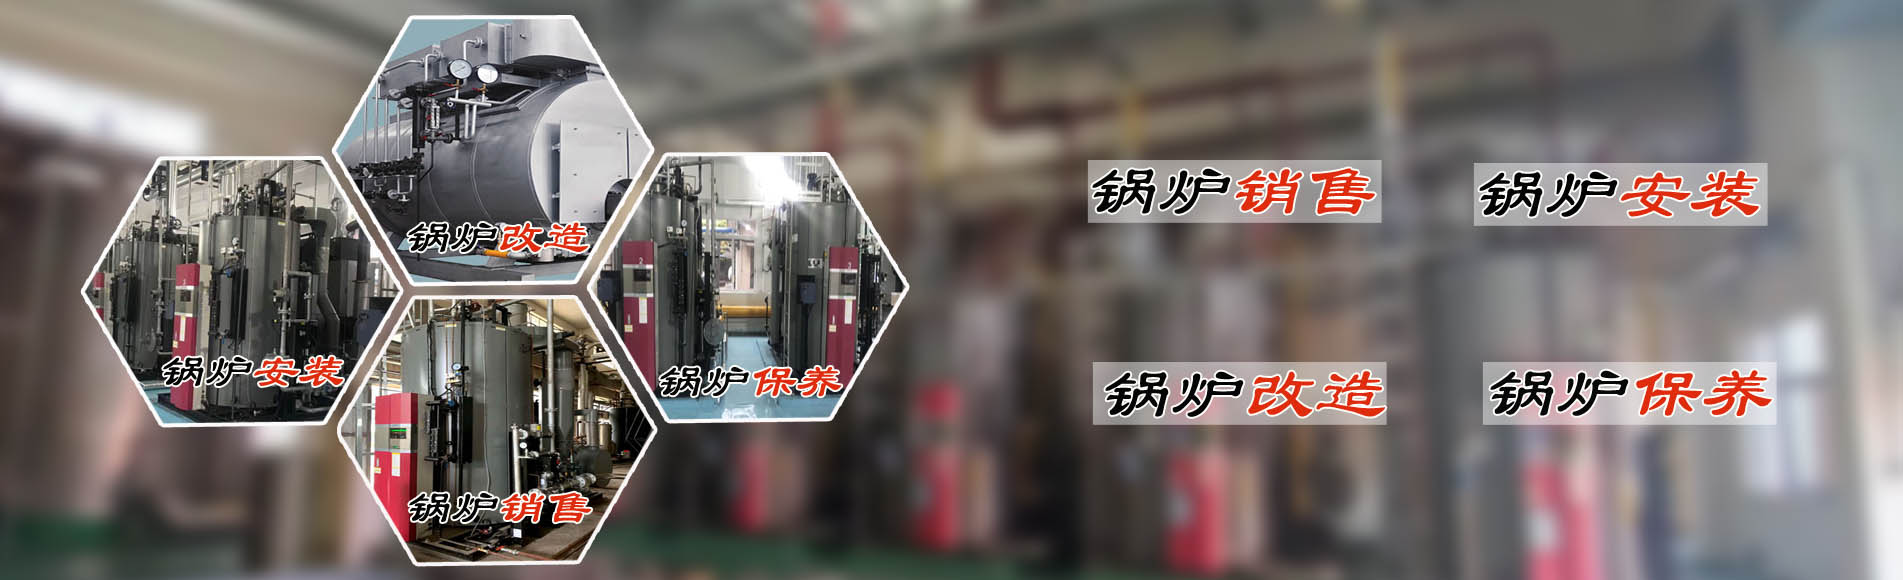 廣州希諾機電提供蒸汽節能鍋爐、熱水鍋爐安裝銷售、鍋爐改造、鍋爐維護保養服務。